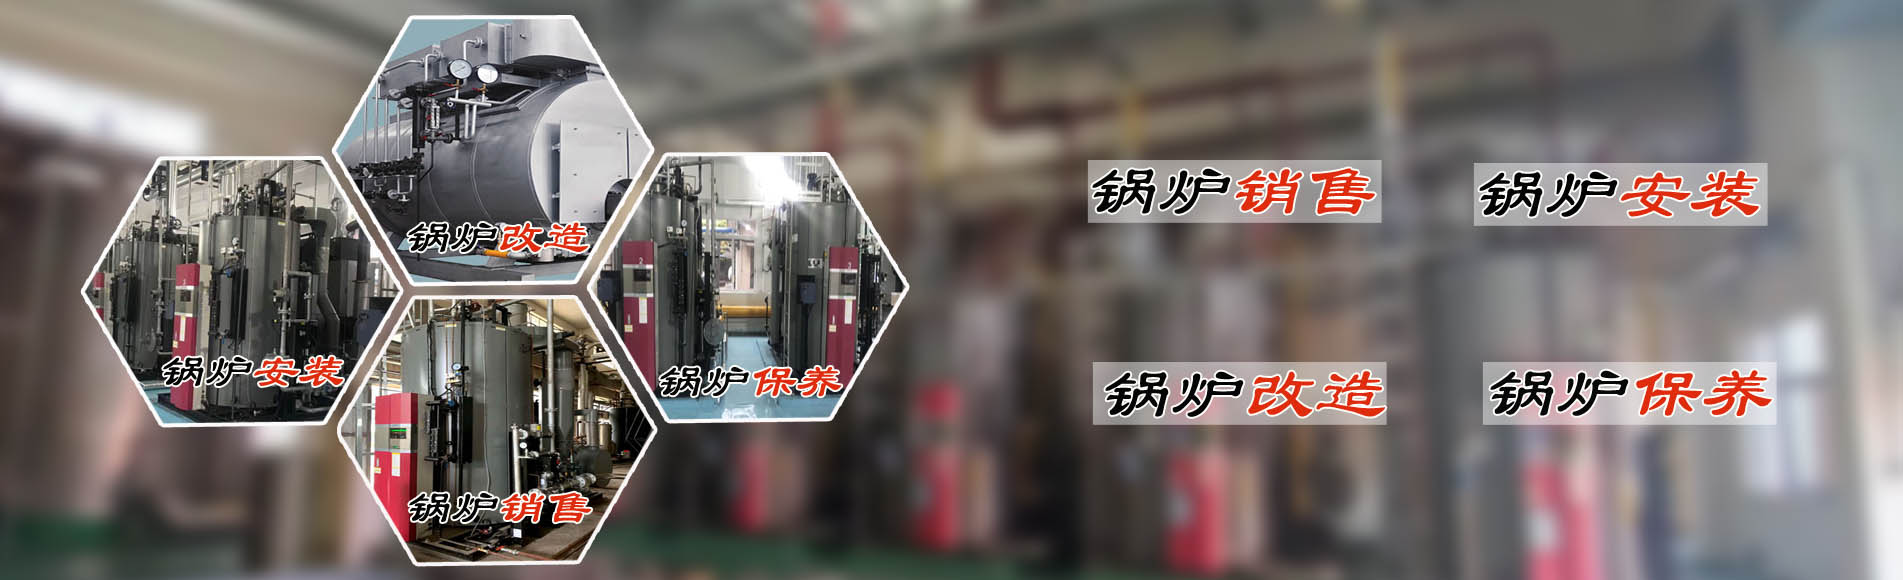 廣州希諾機電提供蒸汽節能鍋爐、熱水鍋爐安裝銷售、鍋爐改造、鍋爐維護保養服務。